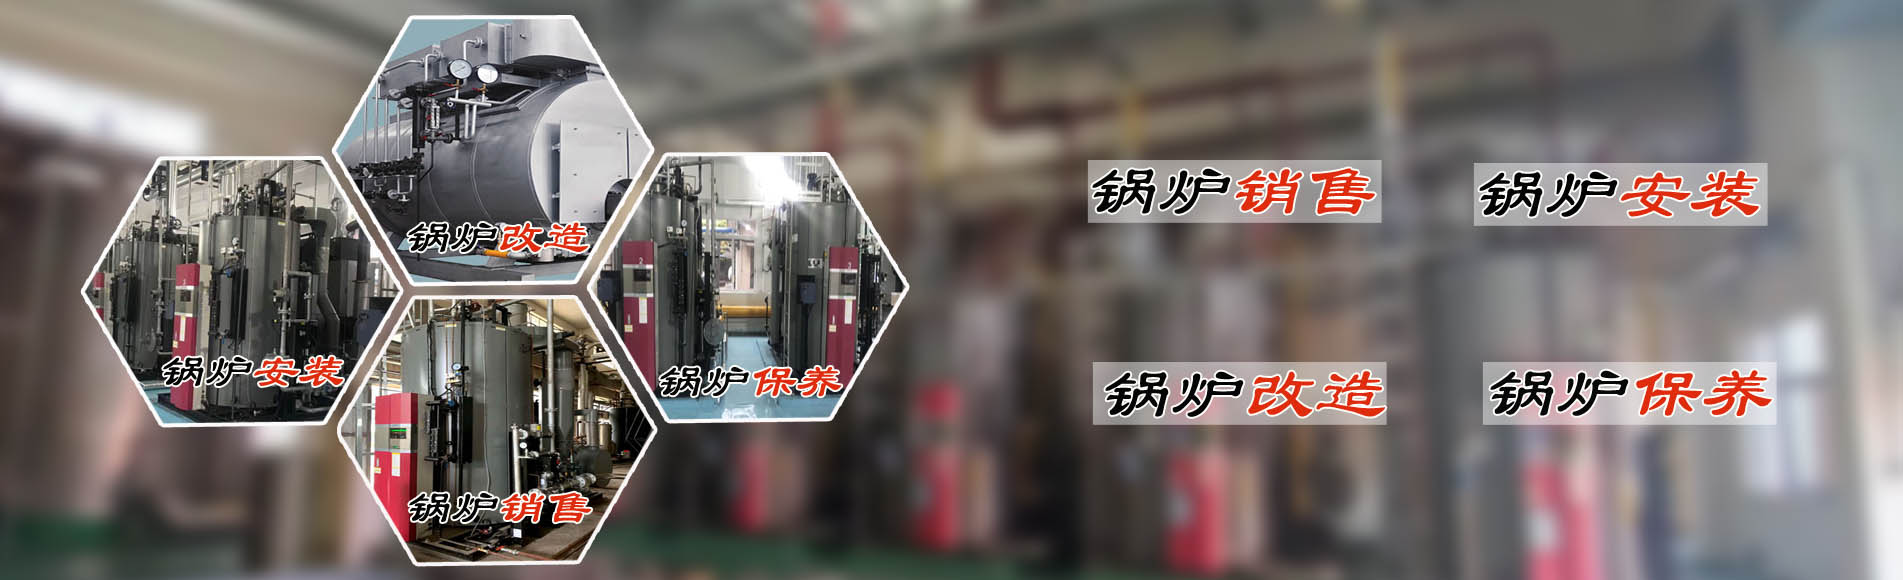 廣州希諾機電提供蒸汽節能鍋爐、熱水鍋爐安裝銷售、鍋爐改造、鍋爐維護保養服務。